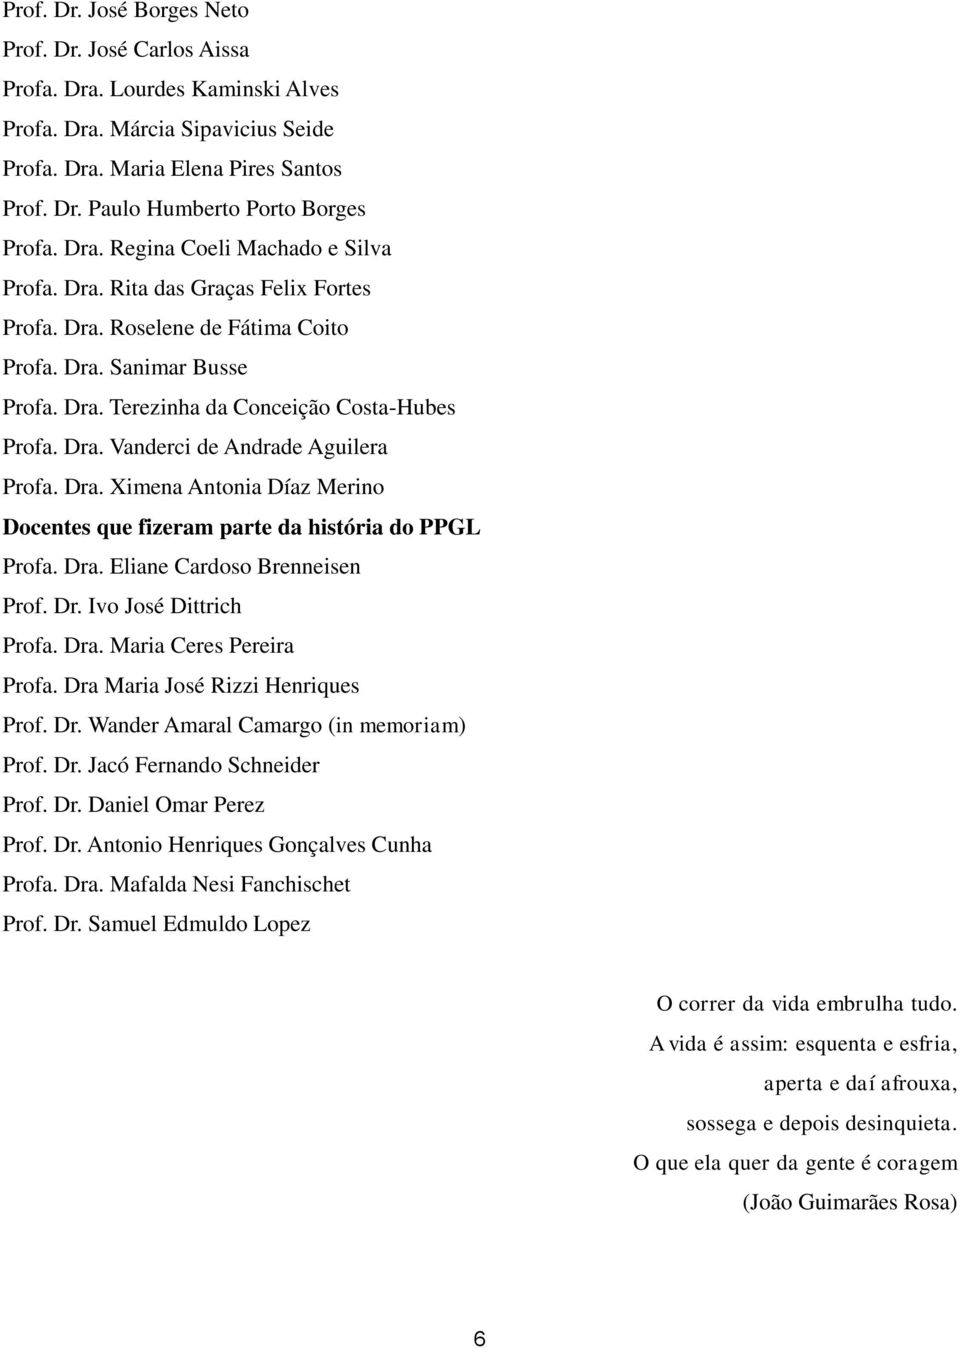 Dra. Ximena Antonia Díaz Merino Docentes que fizeram parte da história do PPGL Profa. Dra. Eliane Cardoso Brenneisen Prof. Dr. Ivo José Dittrich Profa. Dra. Maria Ceres Pereira Profa.